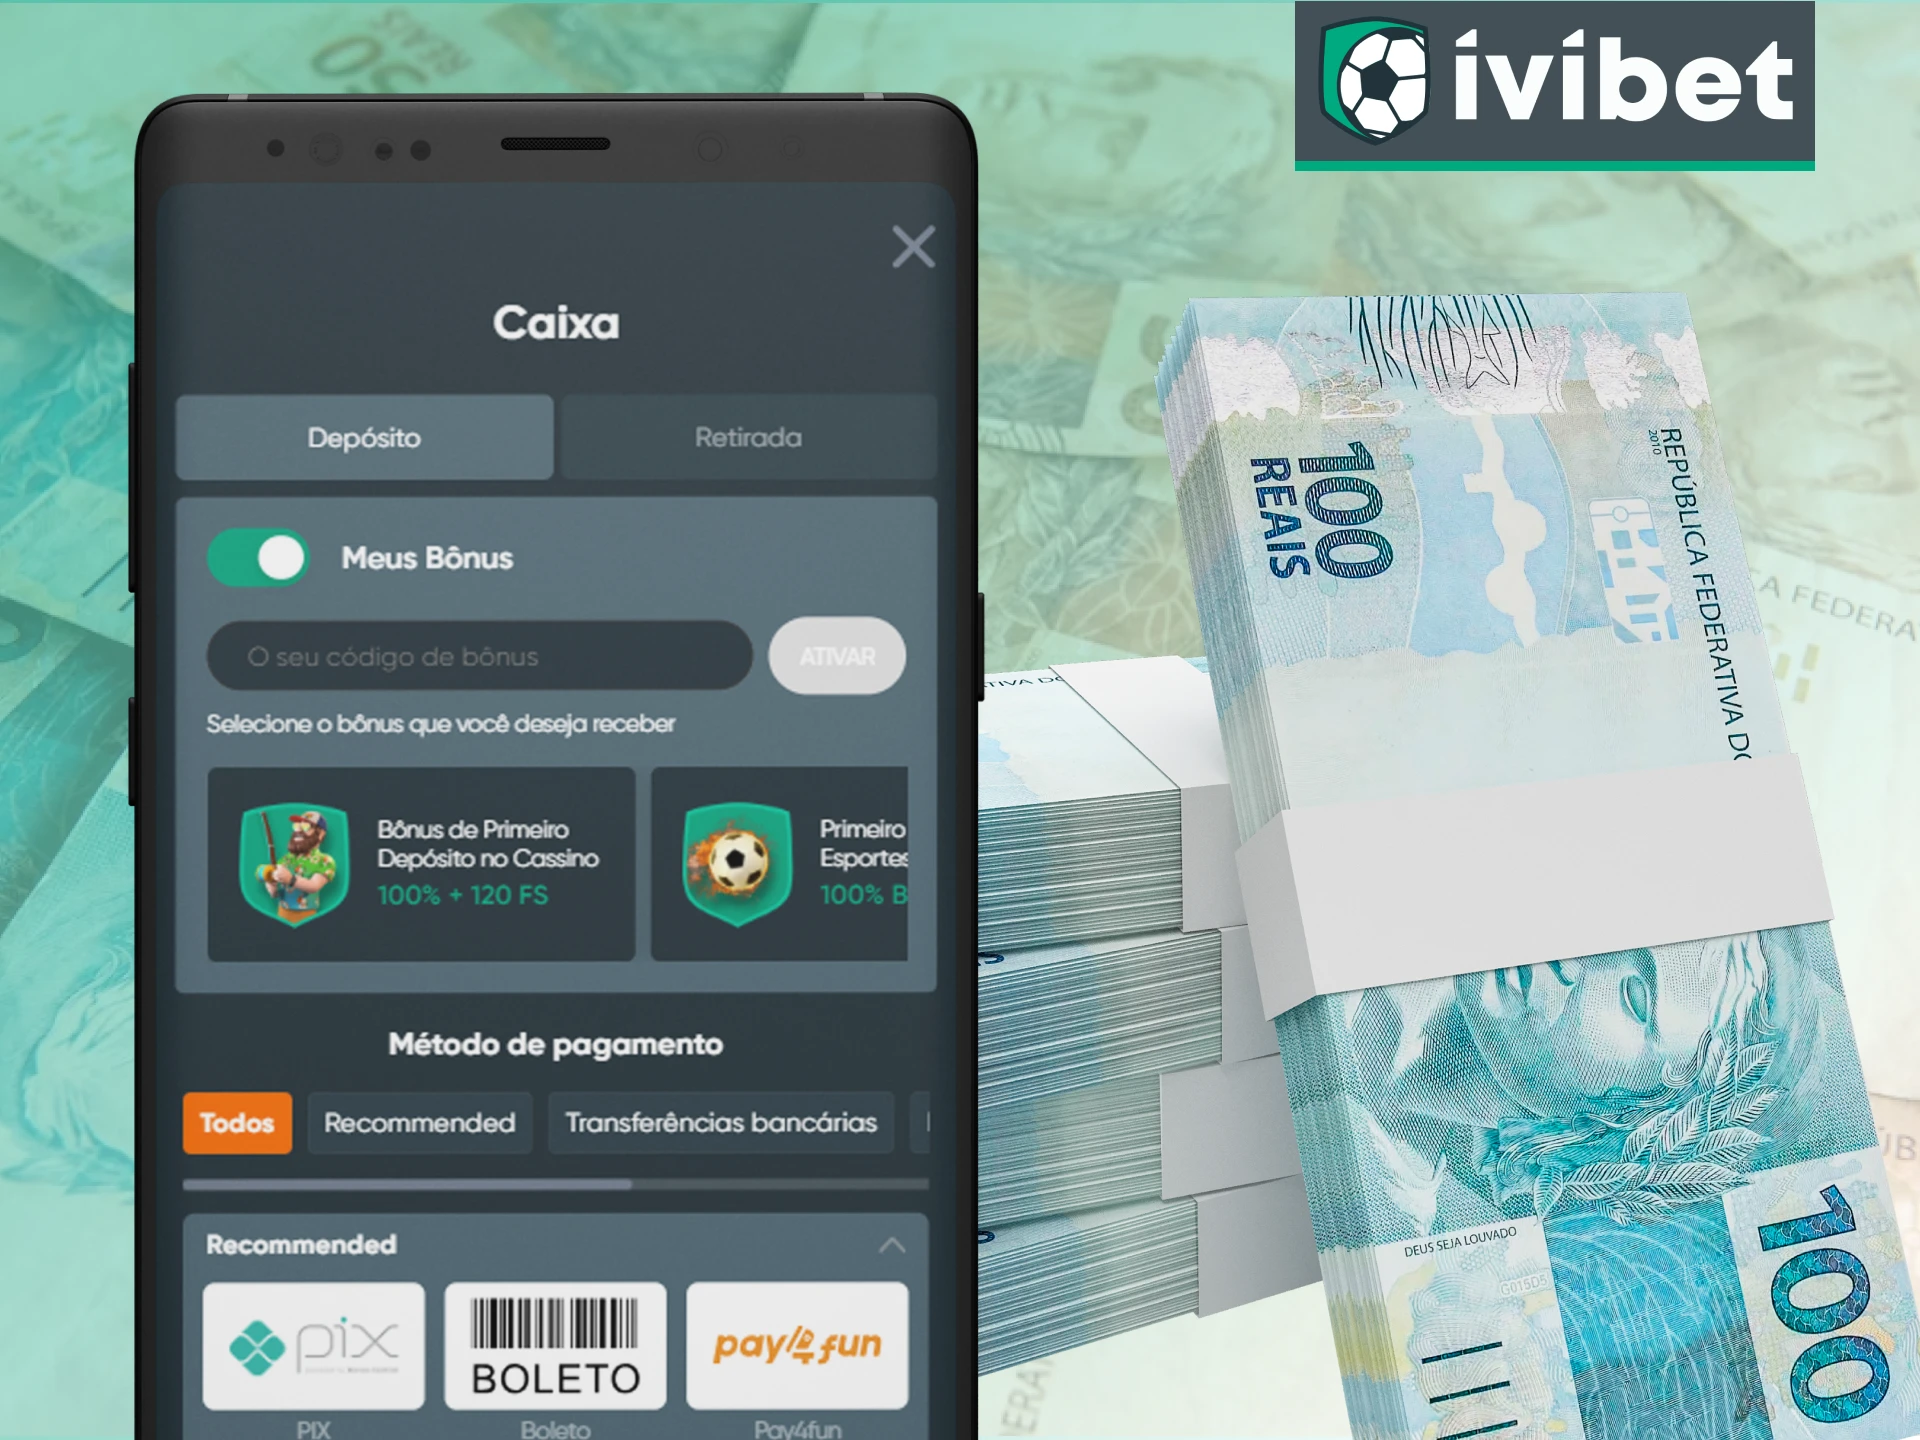 Descubra como é fácil depositar no app Ivibet.